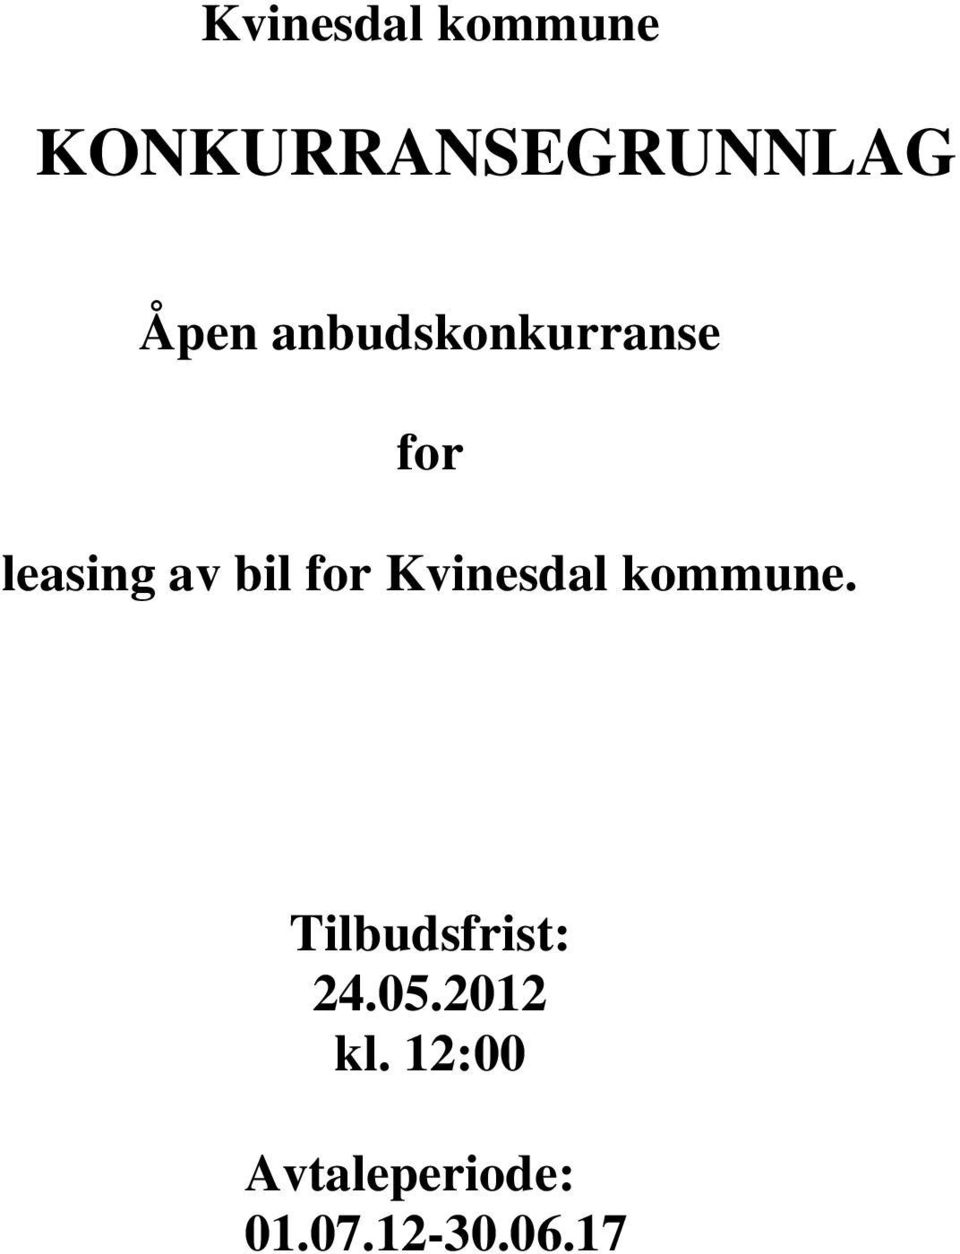 Kvinesdal kommune. Tilbudsfrist: 24.05.